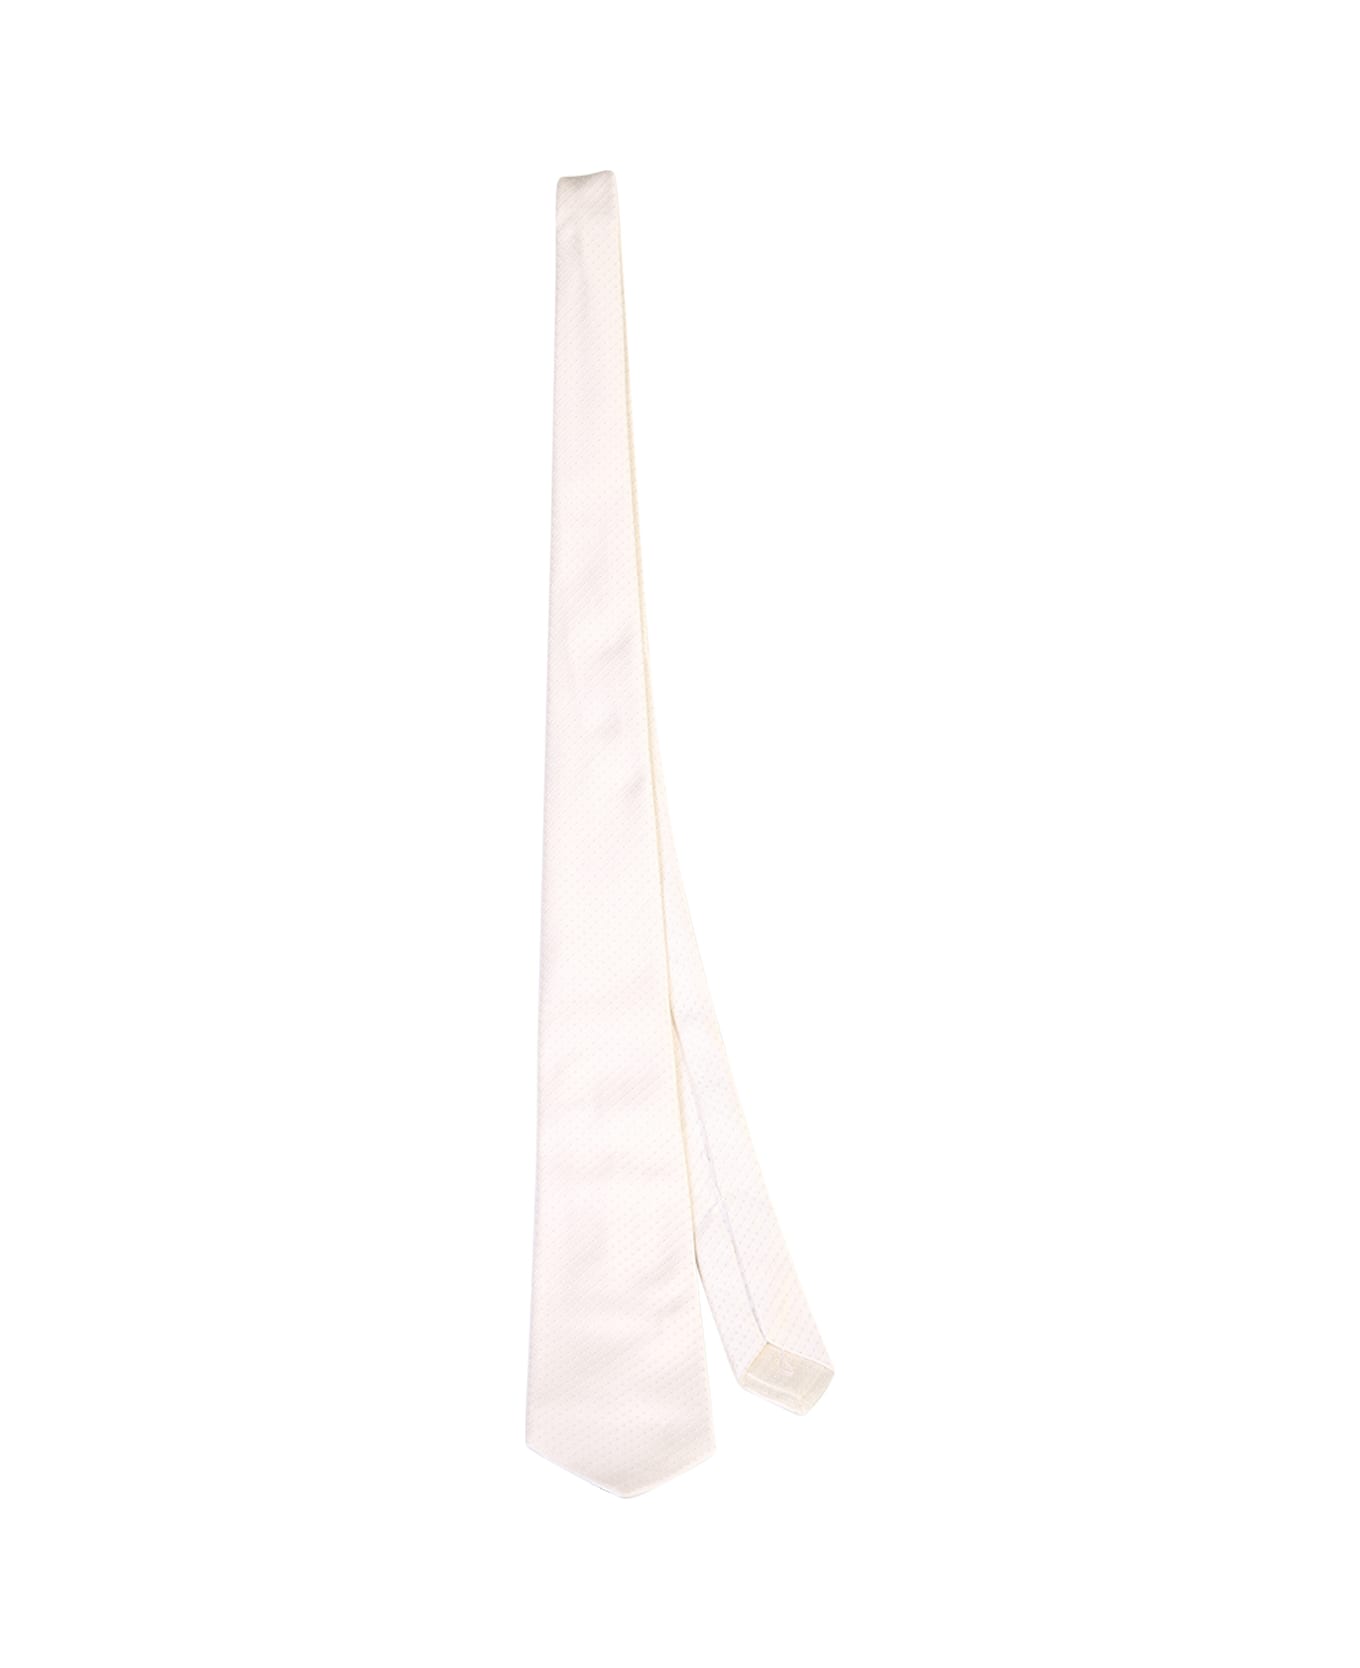 Kiton Striped Tie - White